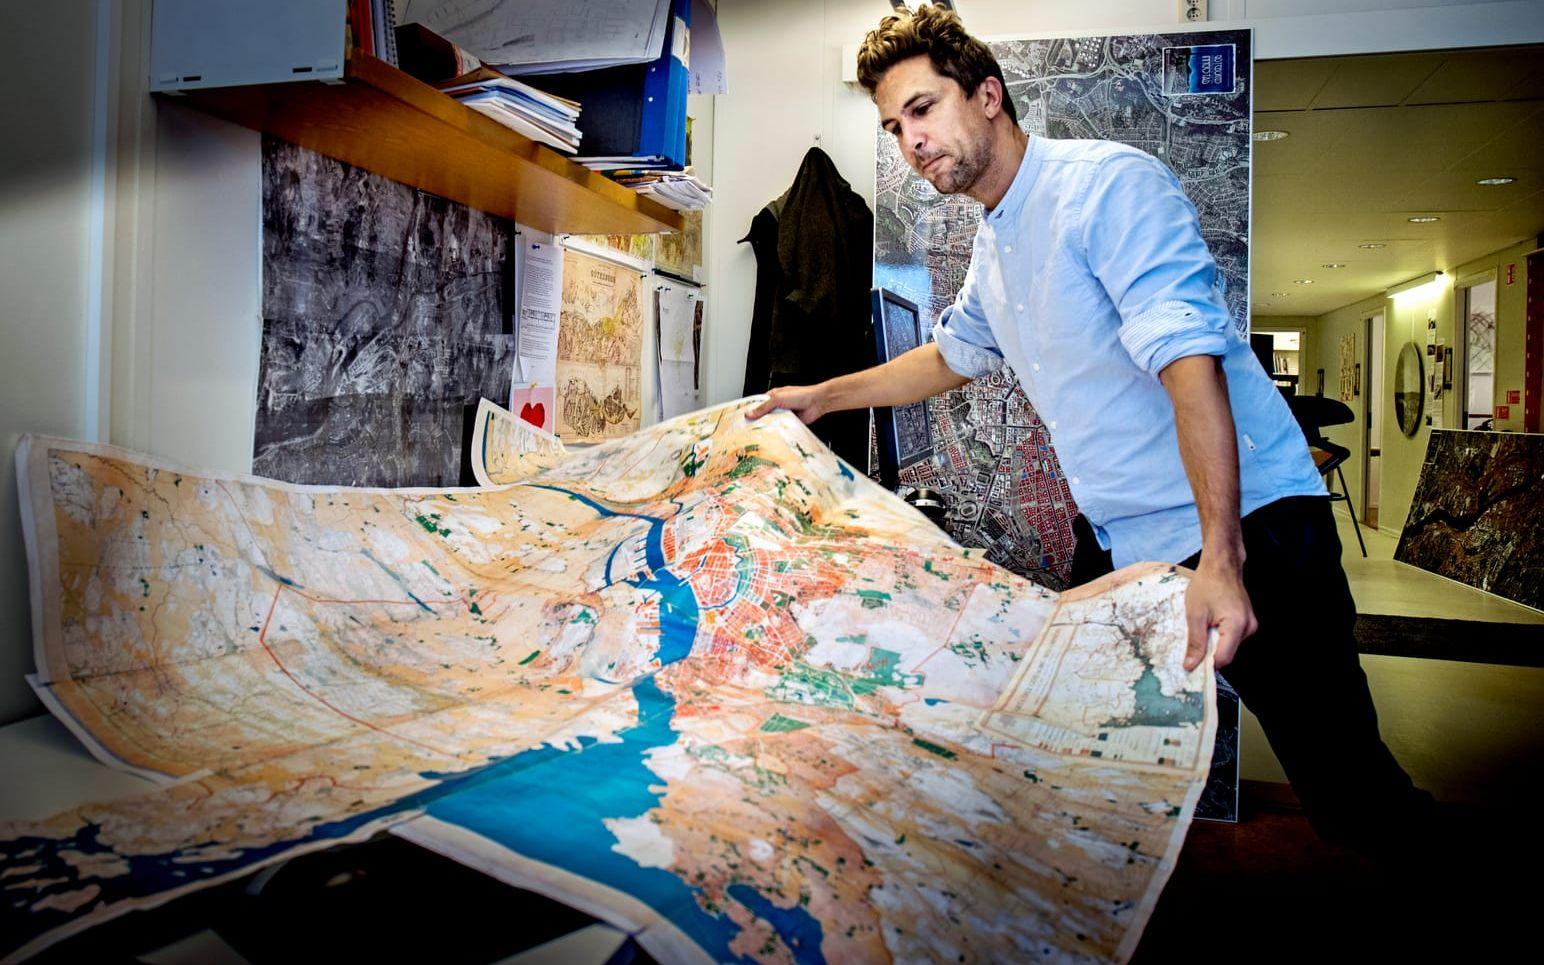 Lukas Memborn, arkitekt som har sett framtiden genom att blicka bakåt, visar upp sina kartor och historiska stadsplaner på Stadsbyggnadskontoret. Bild: Lisa Thanner